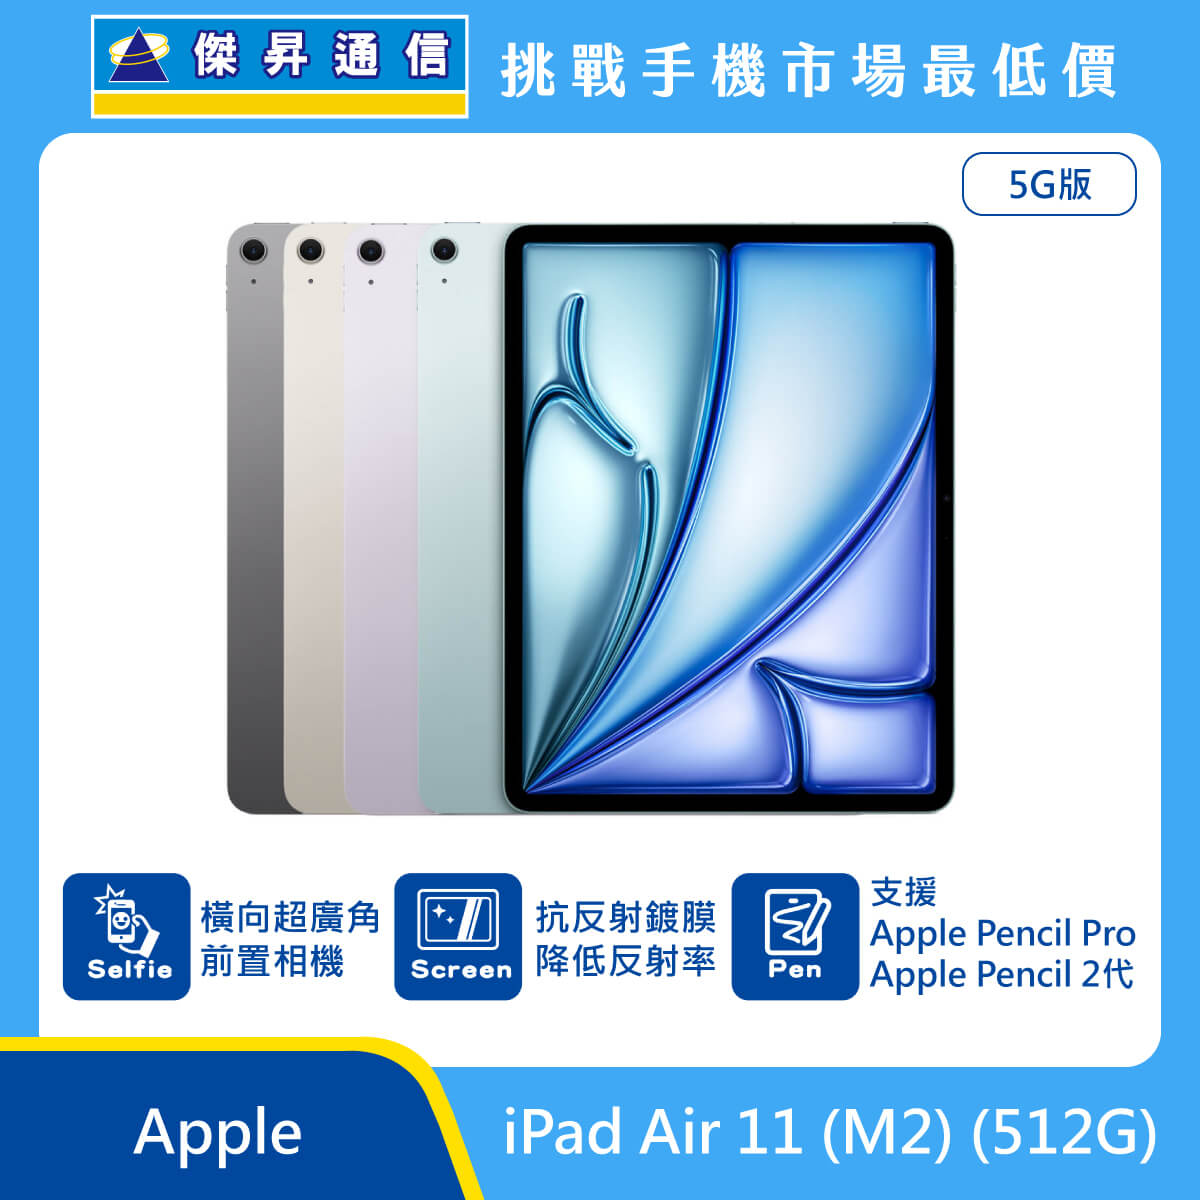 Apple 平板 iPad Air 11 M2 (512G) 即將上市